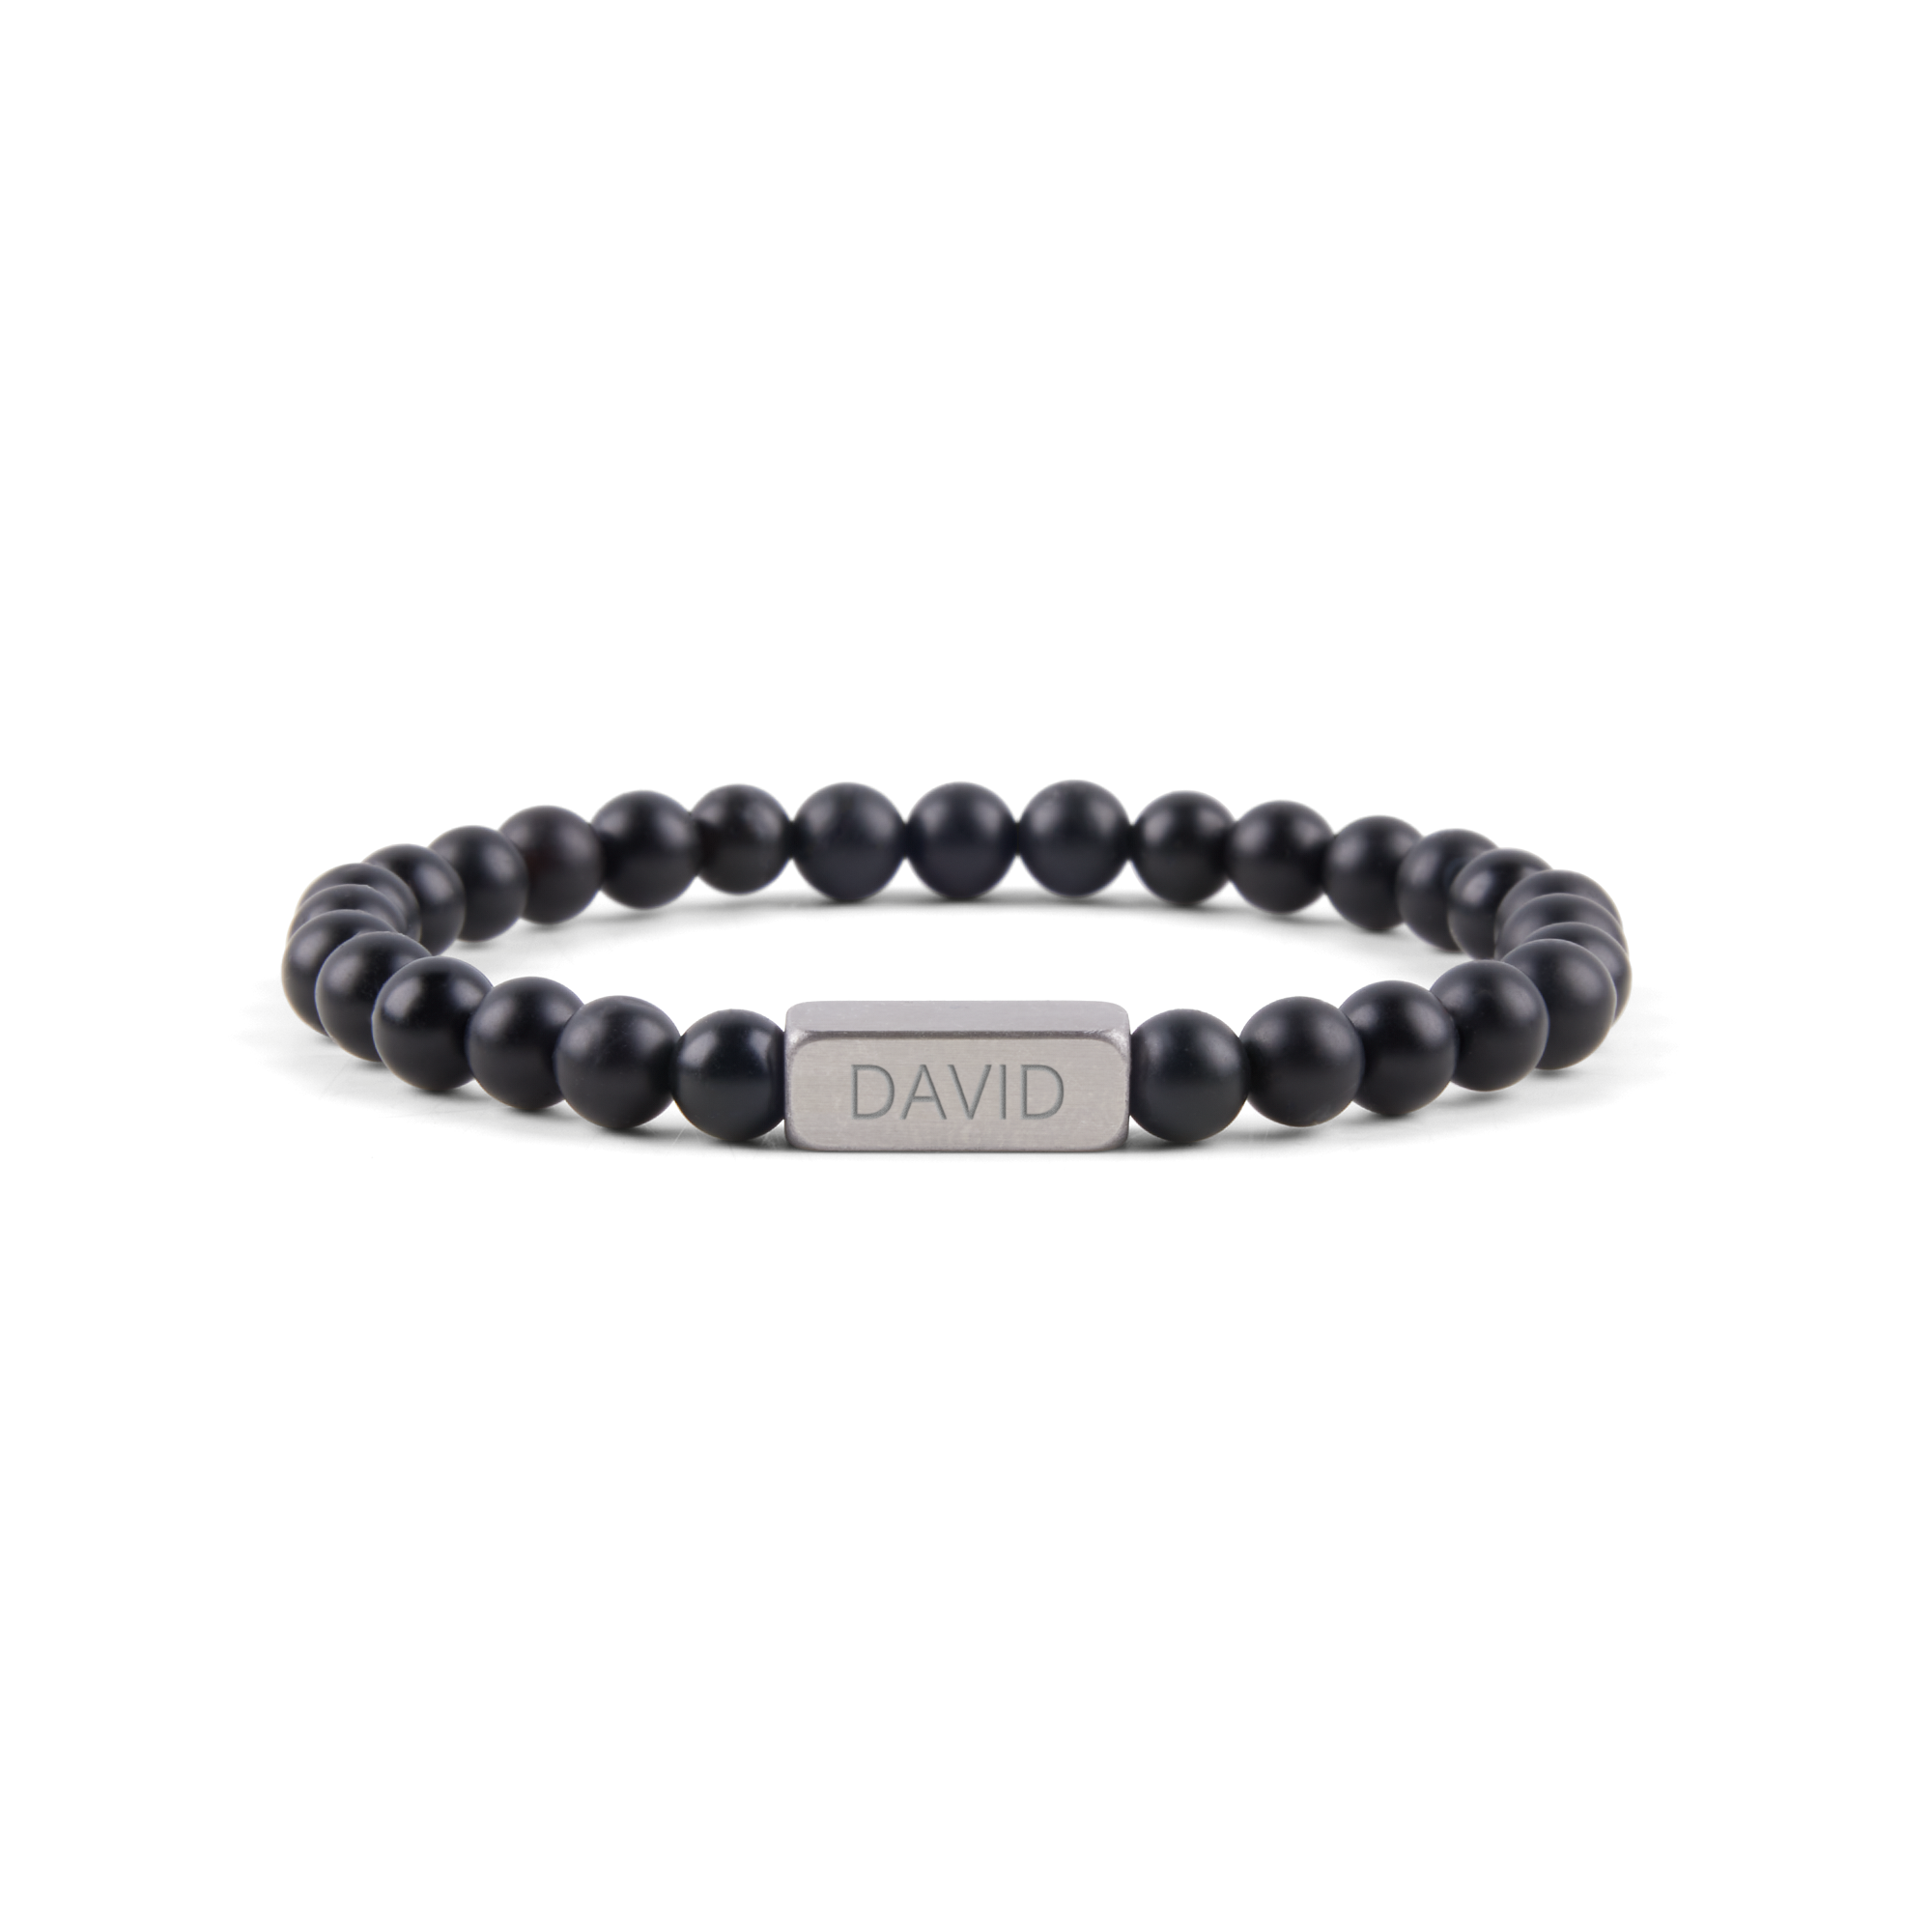 Personalised gemstone bracelet - Black - M